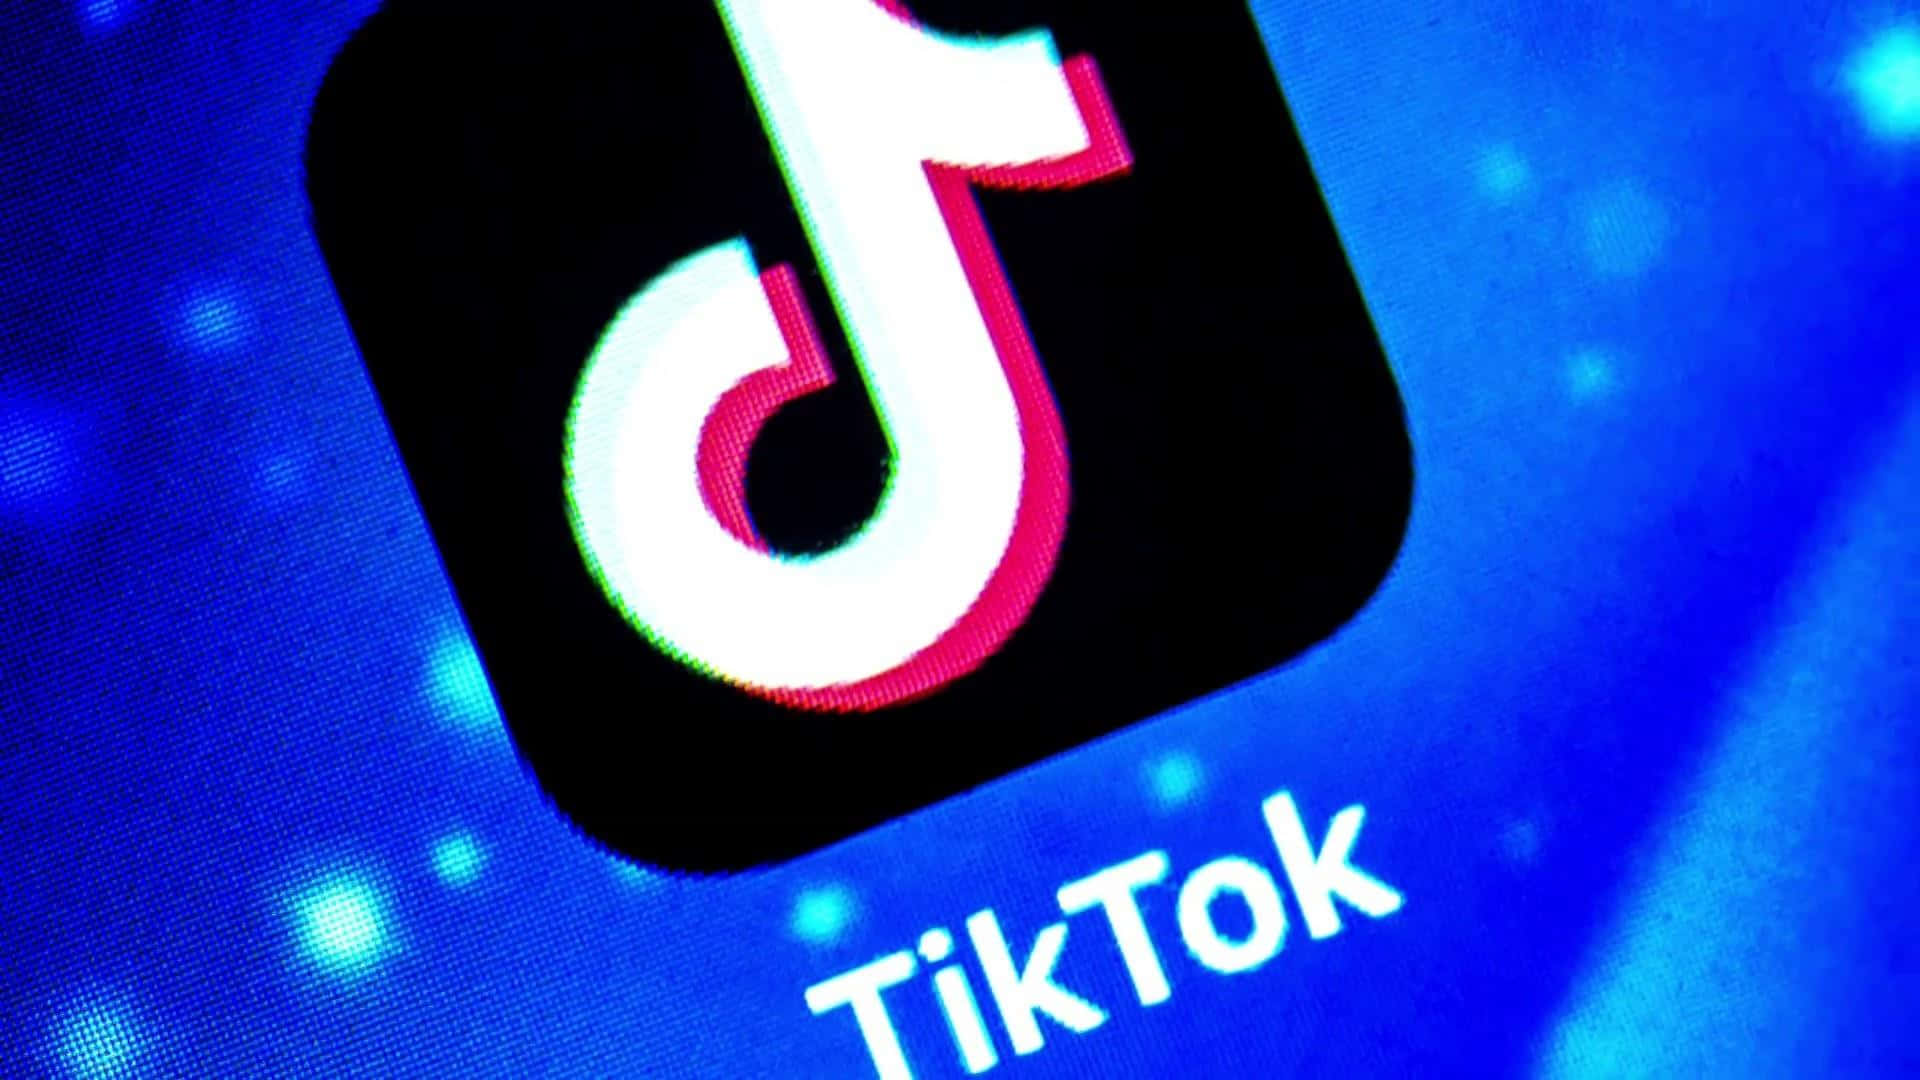 tiktok logo is seen on a computer screen